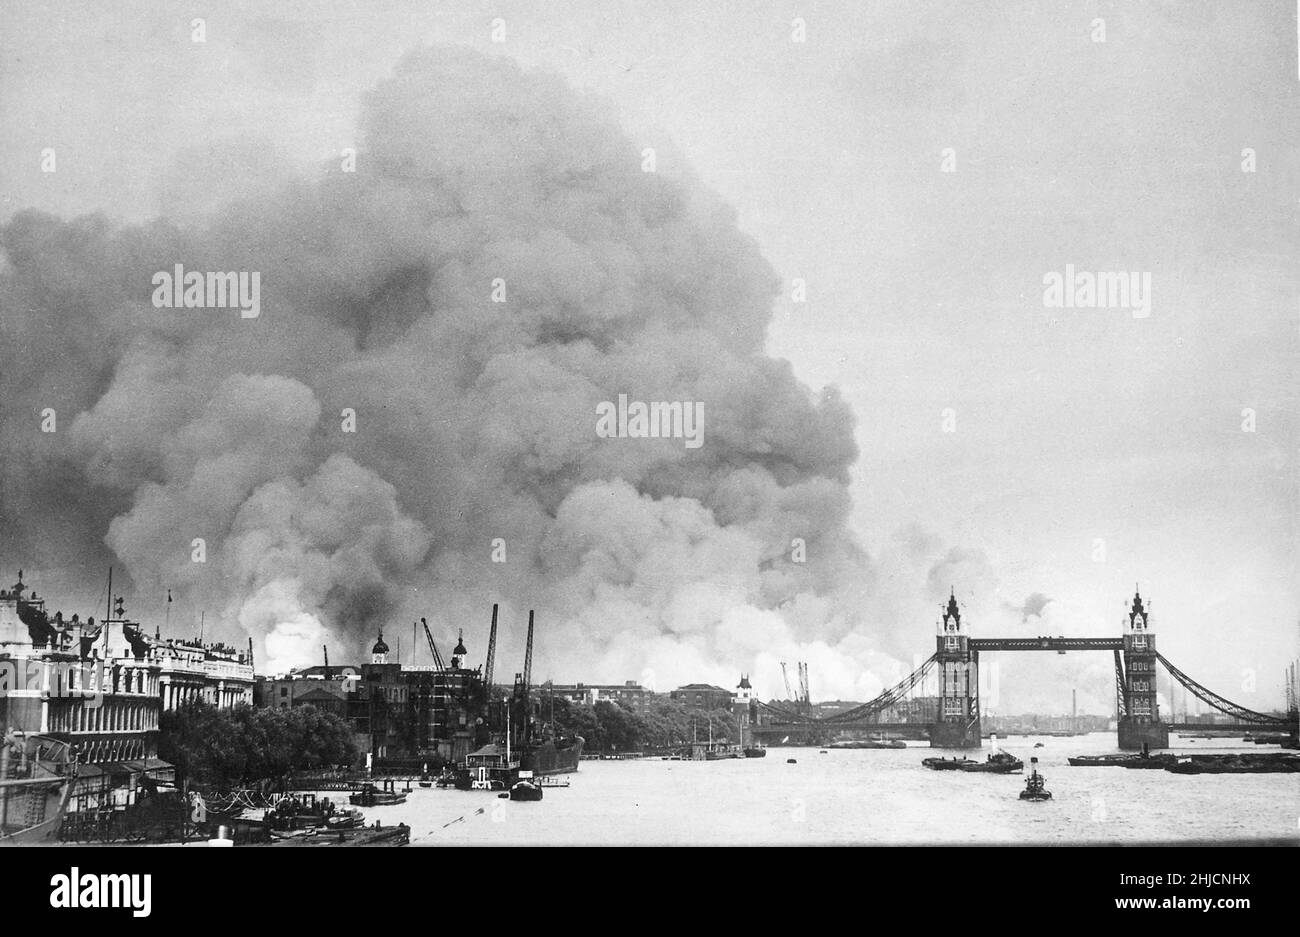 Il primo raid aereo di massa su Londra il 7th settembre 1940, mostrando Tower Bridge e fumo dagli incendi. Il Blitz fu una campagna di bombardamento tedesca contro il Regno Unito nel 1940 e nel 1941, durante la seconda guerra mondiale. Il termine deriva da Blitzkrieg, che significa "guerra dei fulmini" in tedesco. Foto Stock